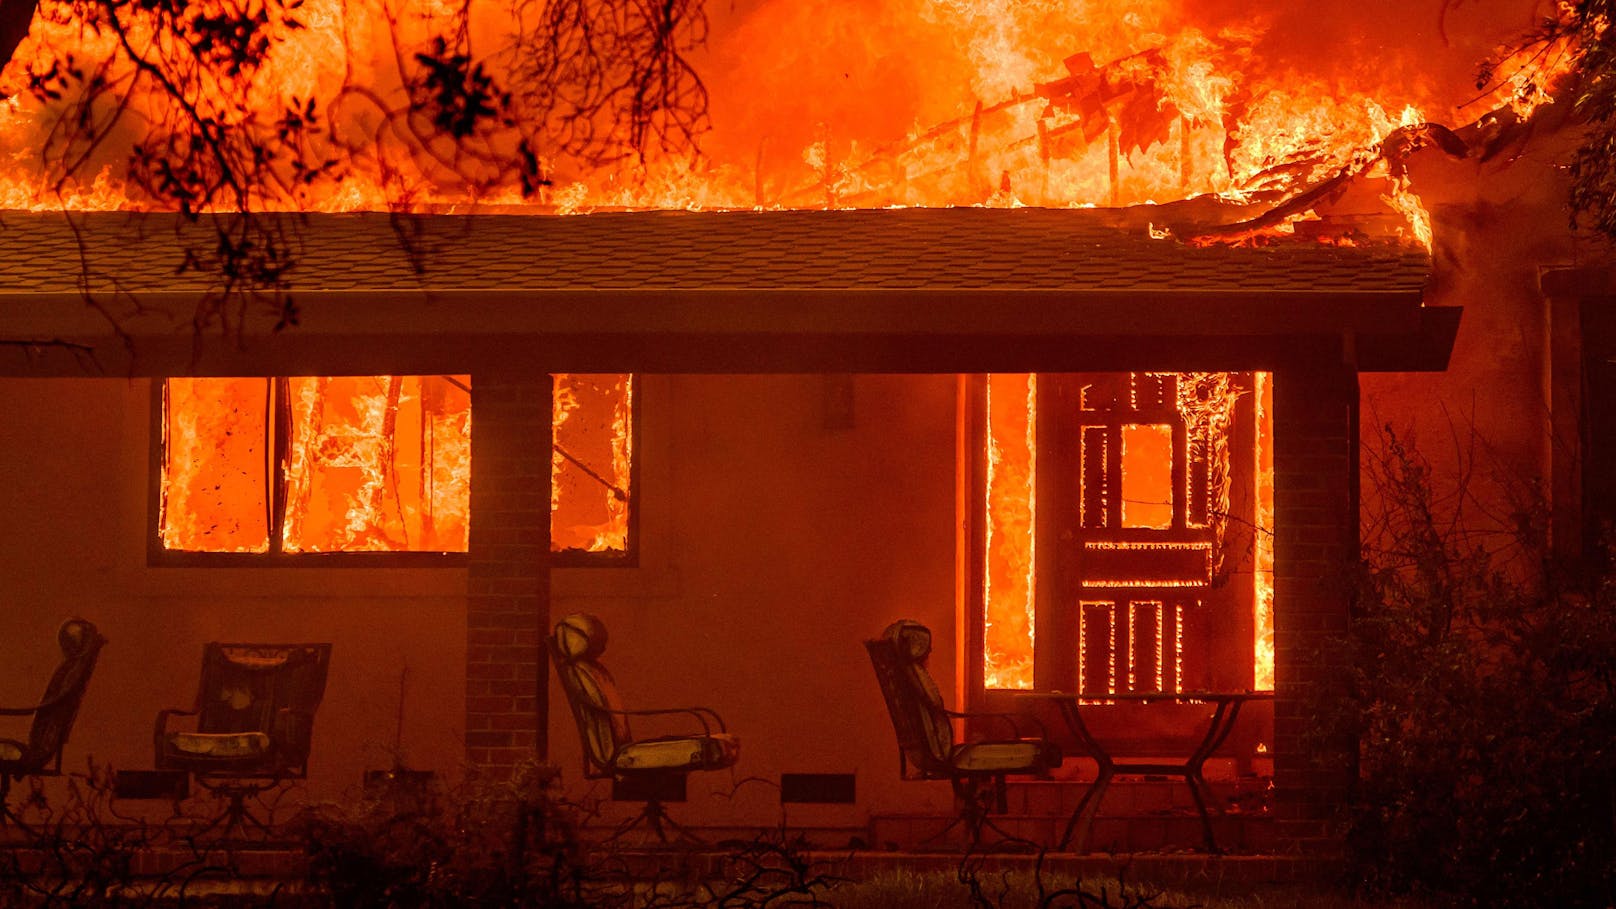 Das "Thompson"-Feuer verschlingt ein Wohnhaus in Kalifornien. Tausende sind bereits geflohen.